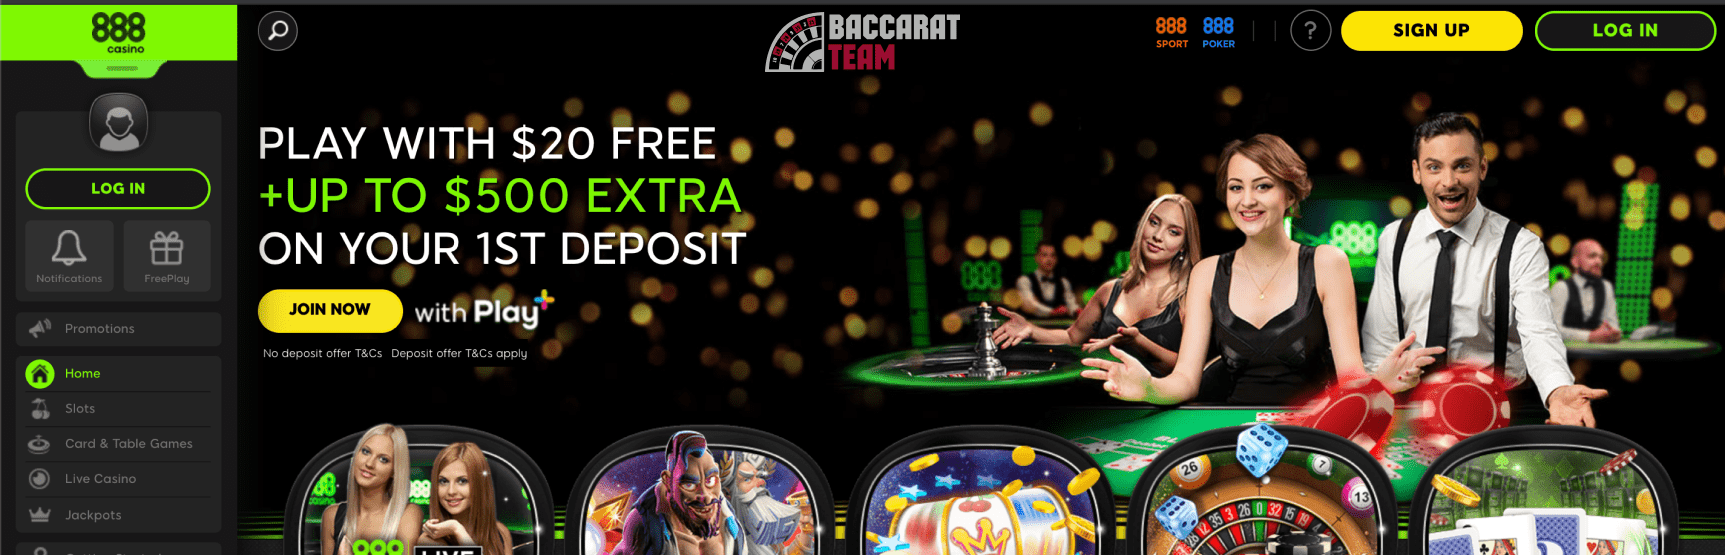 Казино 888 официальный сайт online sport betting casino